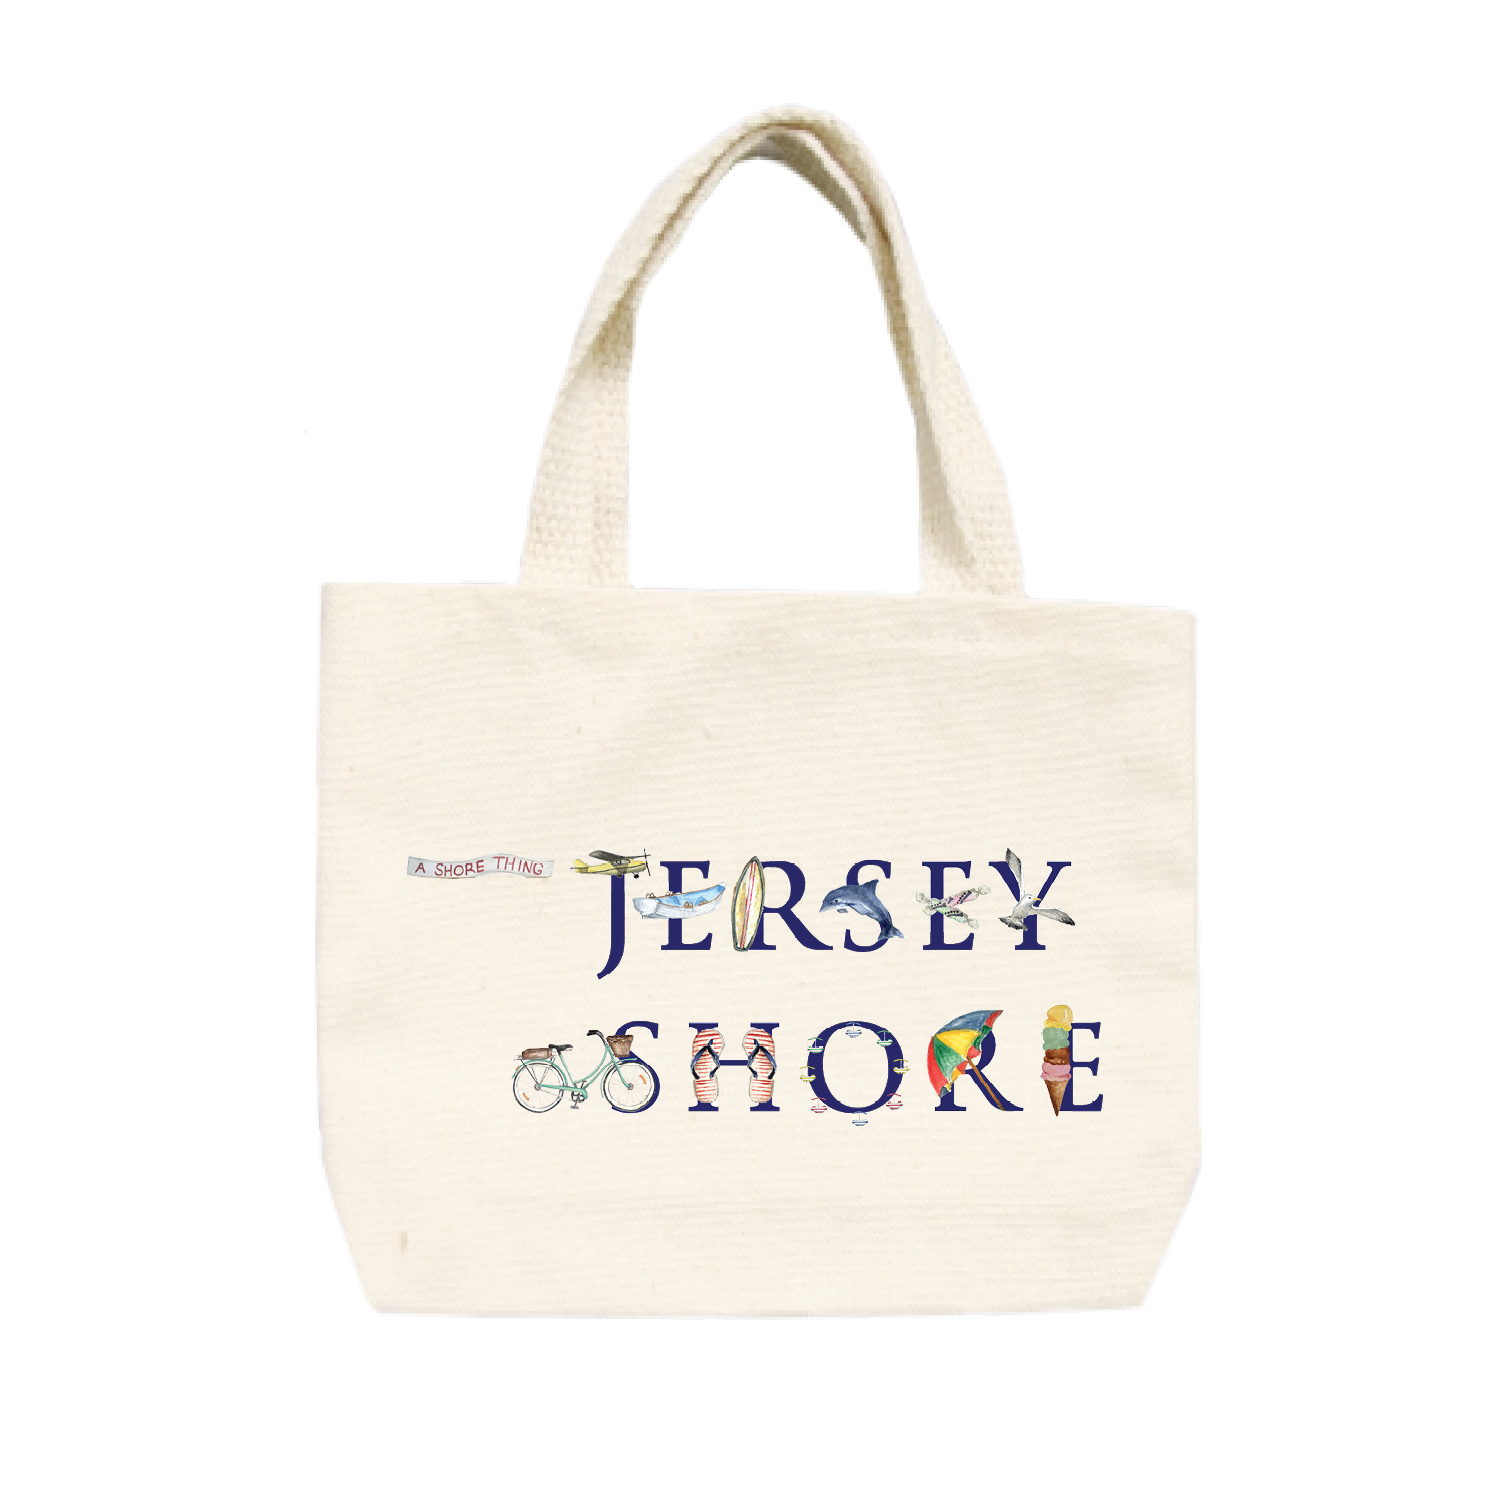 jersey shore small tote